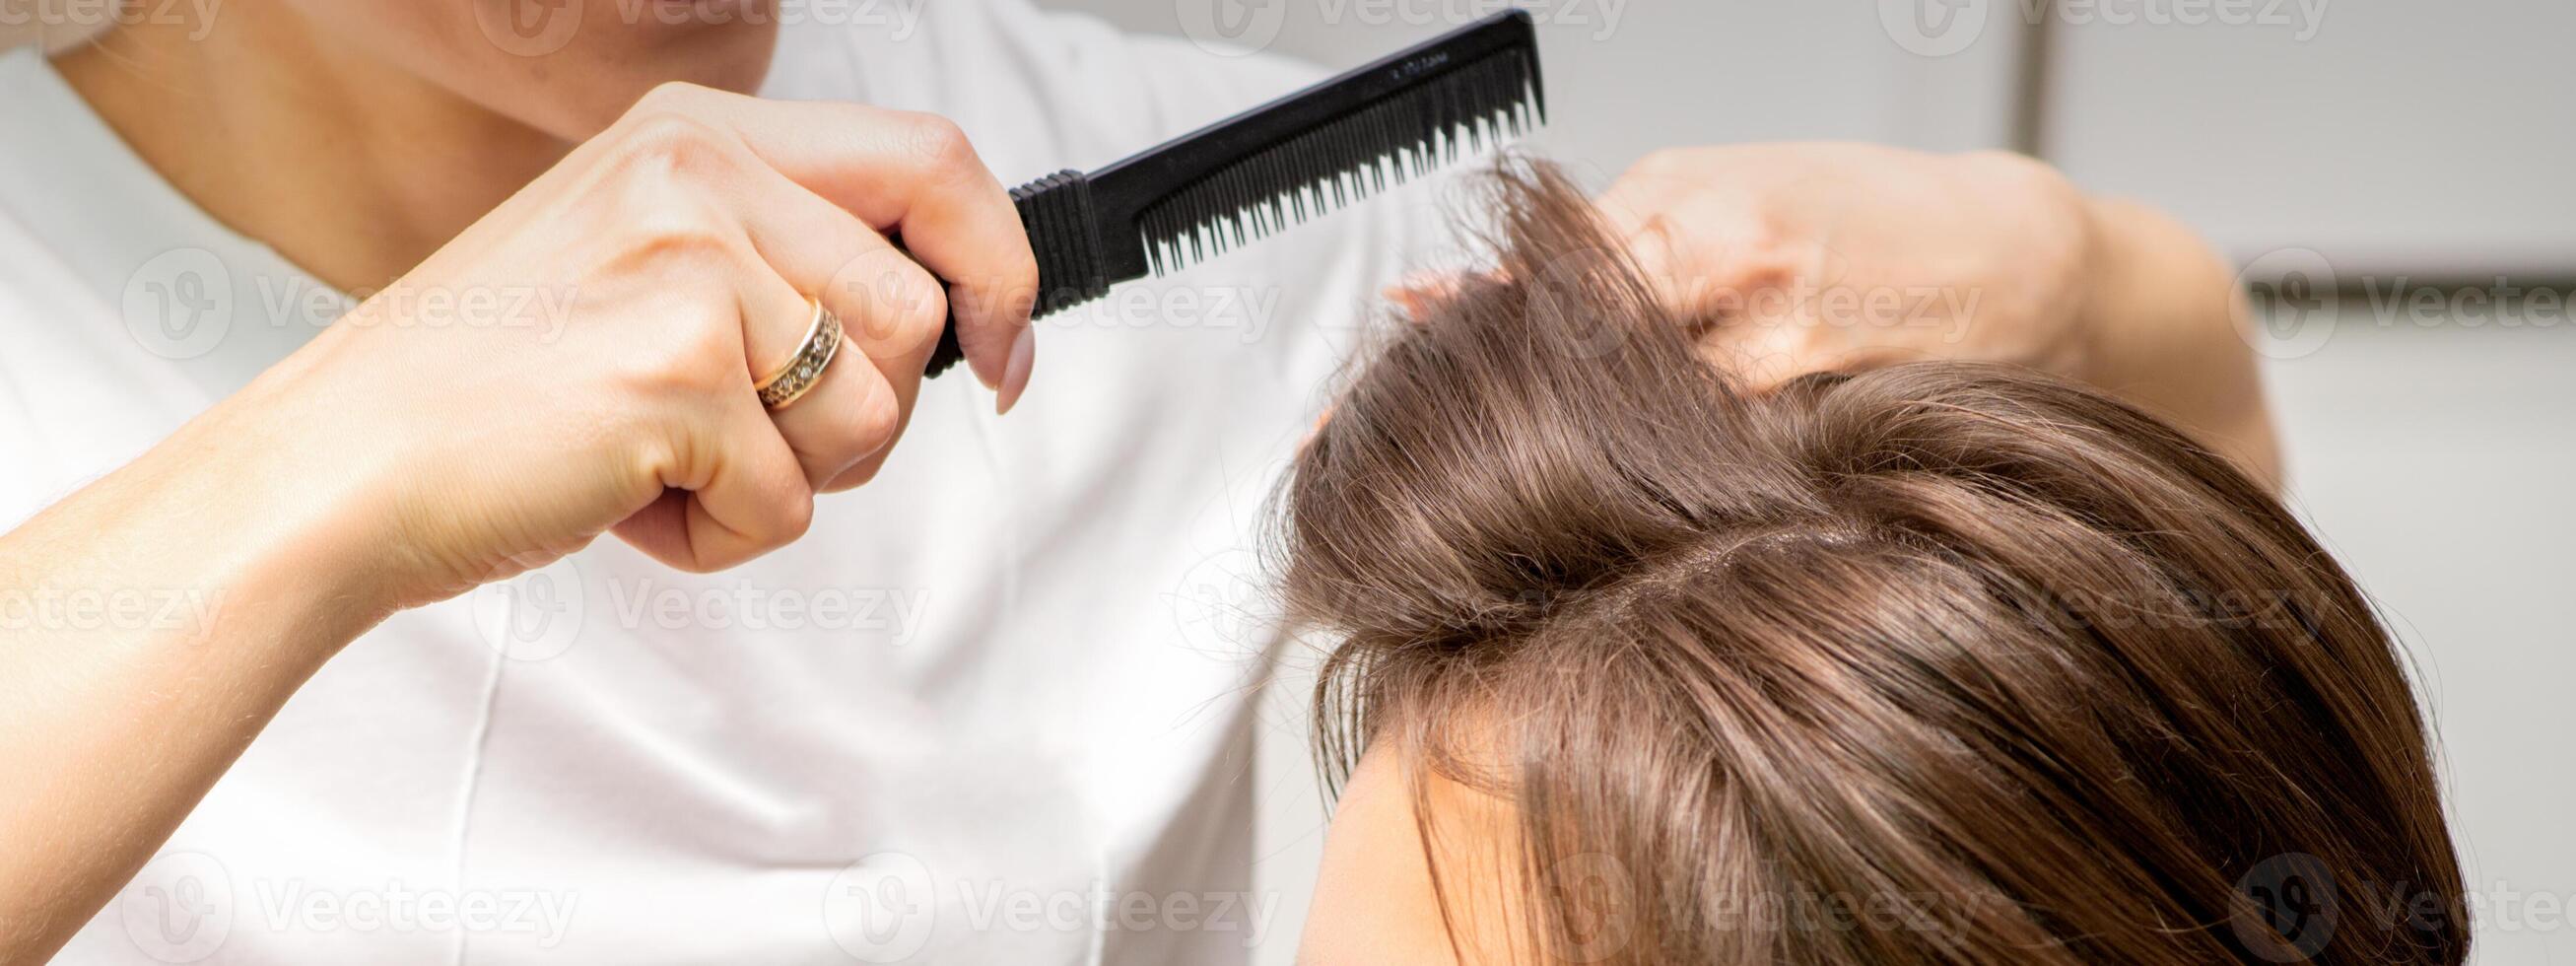 profesional peluquero haciendo peinado para un hermosa morena joven mujer con largo cabello. concepto de Moda y belleza. foto